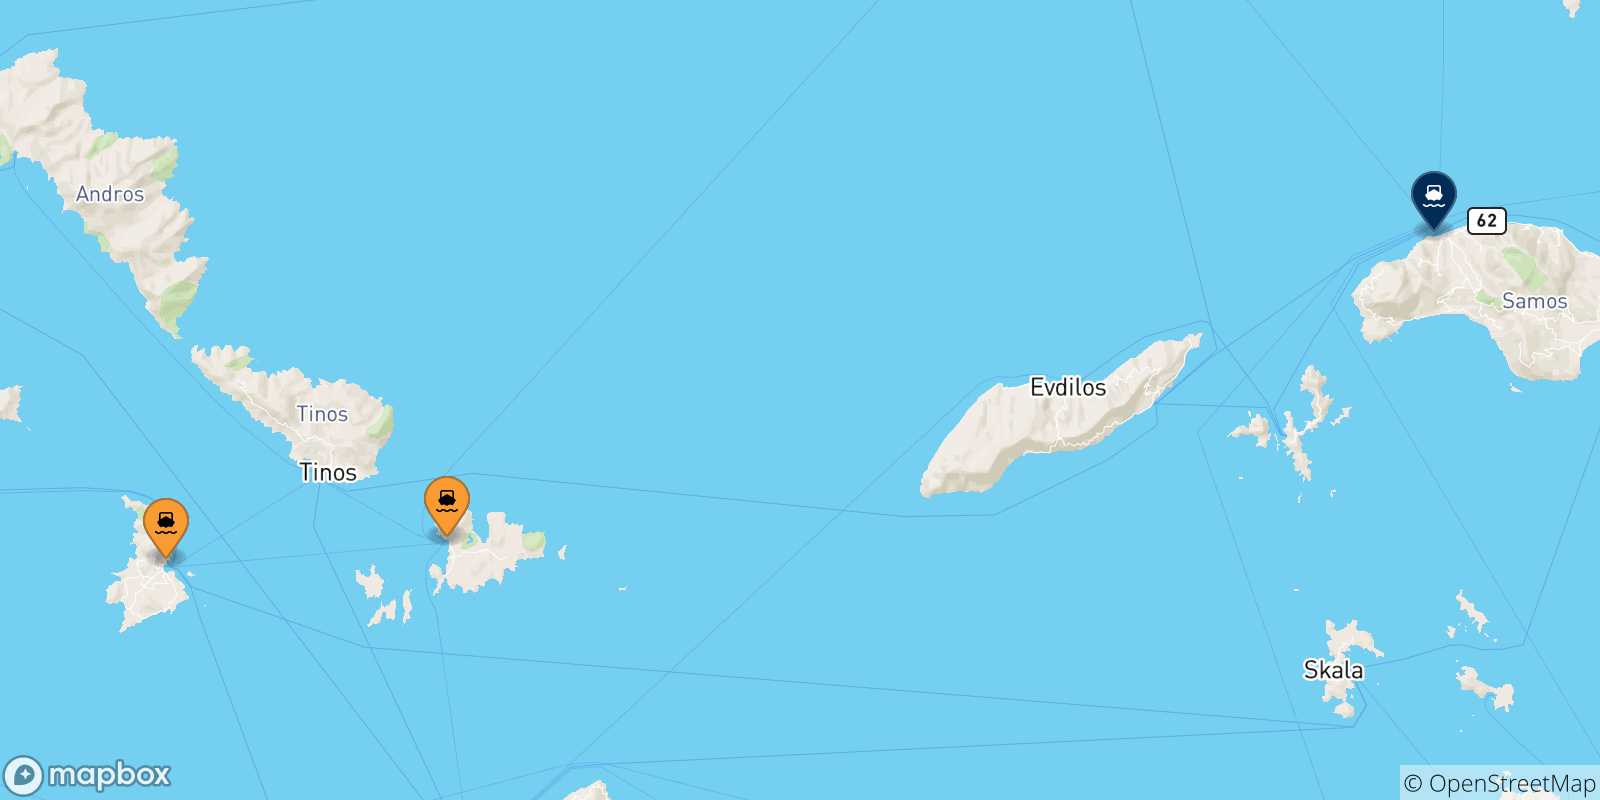 Mappa delle possibili rotte tra le Isole Cicladi e Karlovassi (Samos)